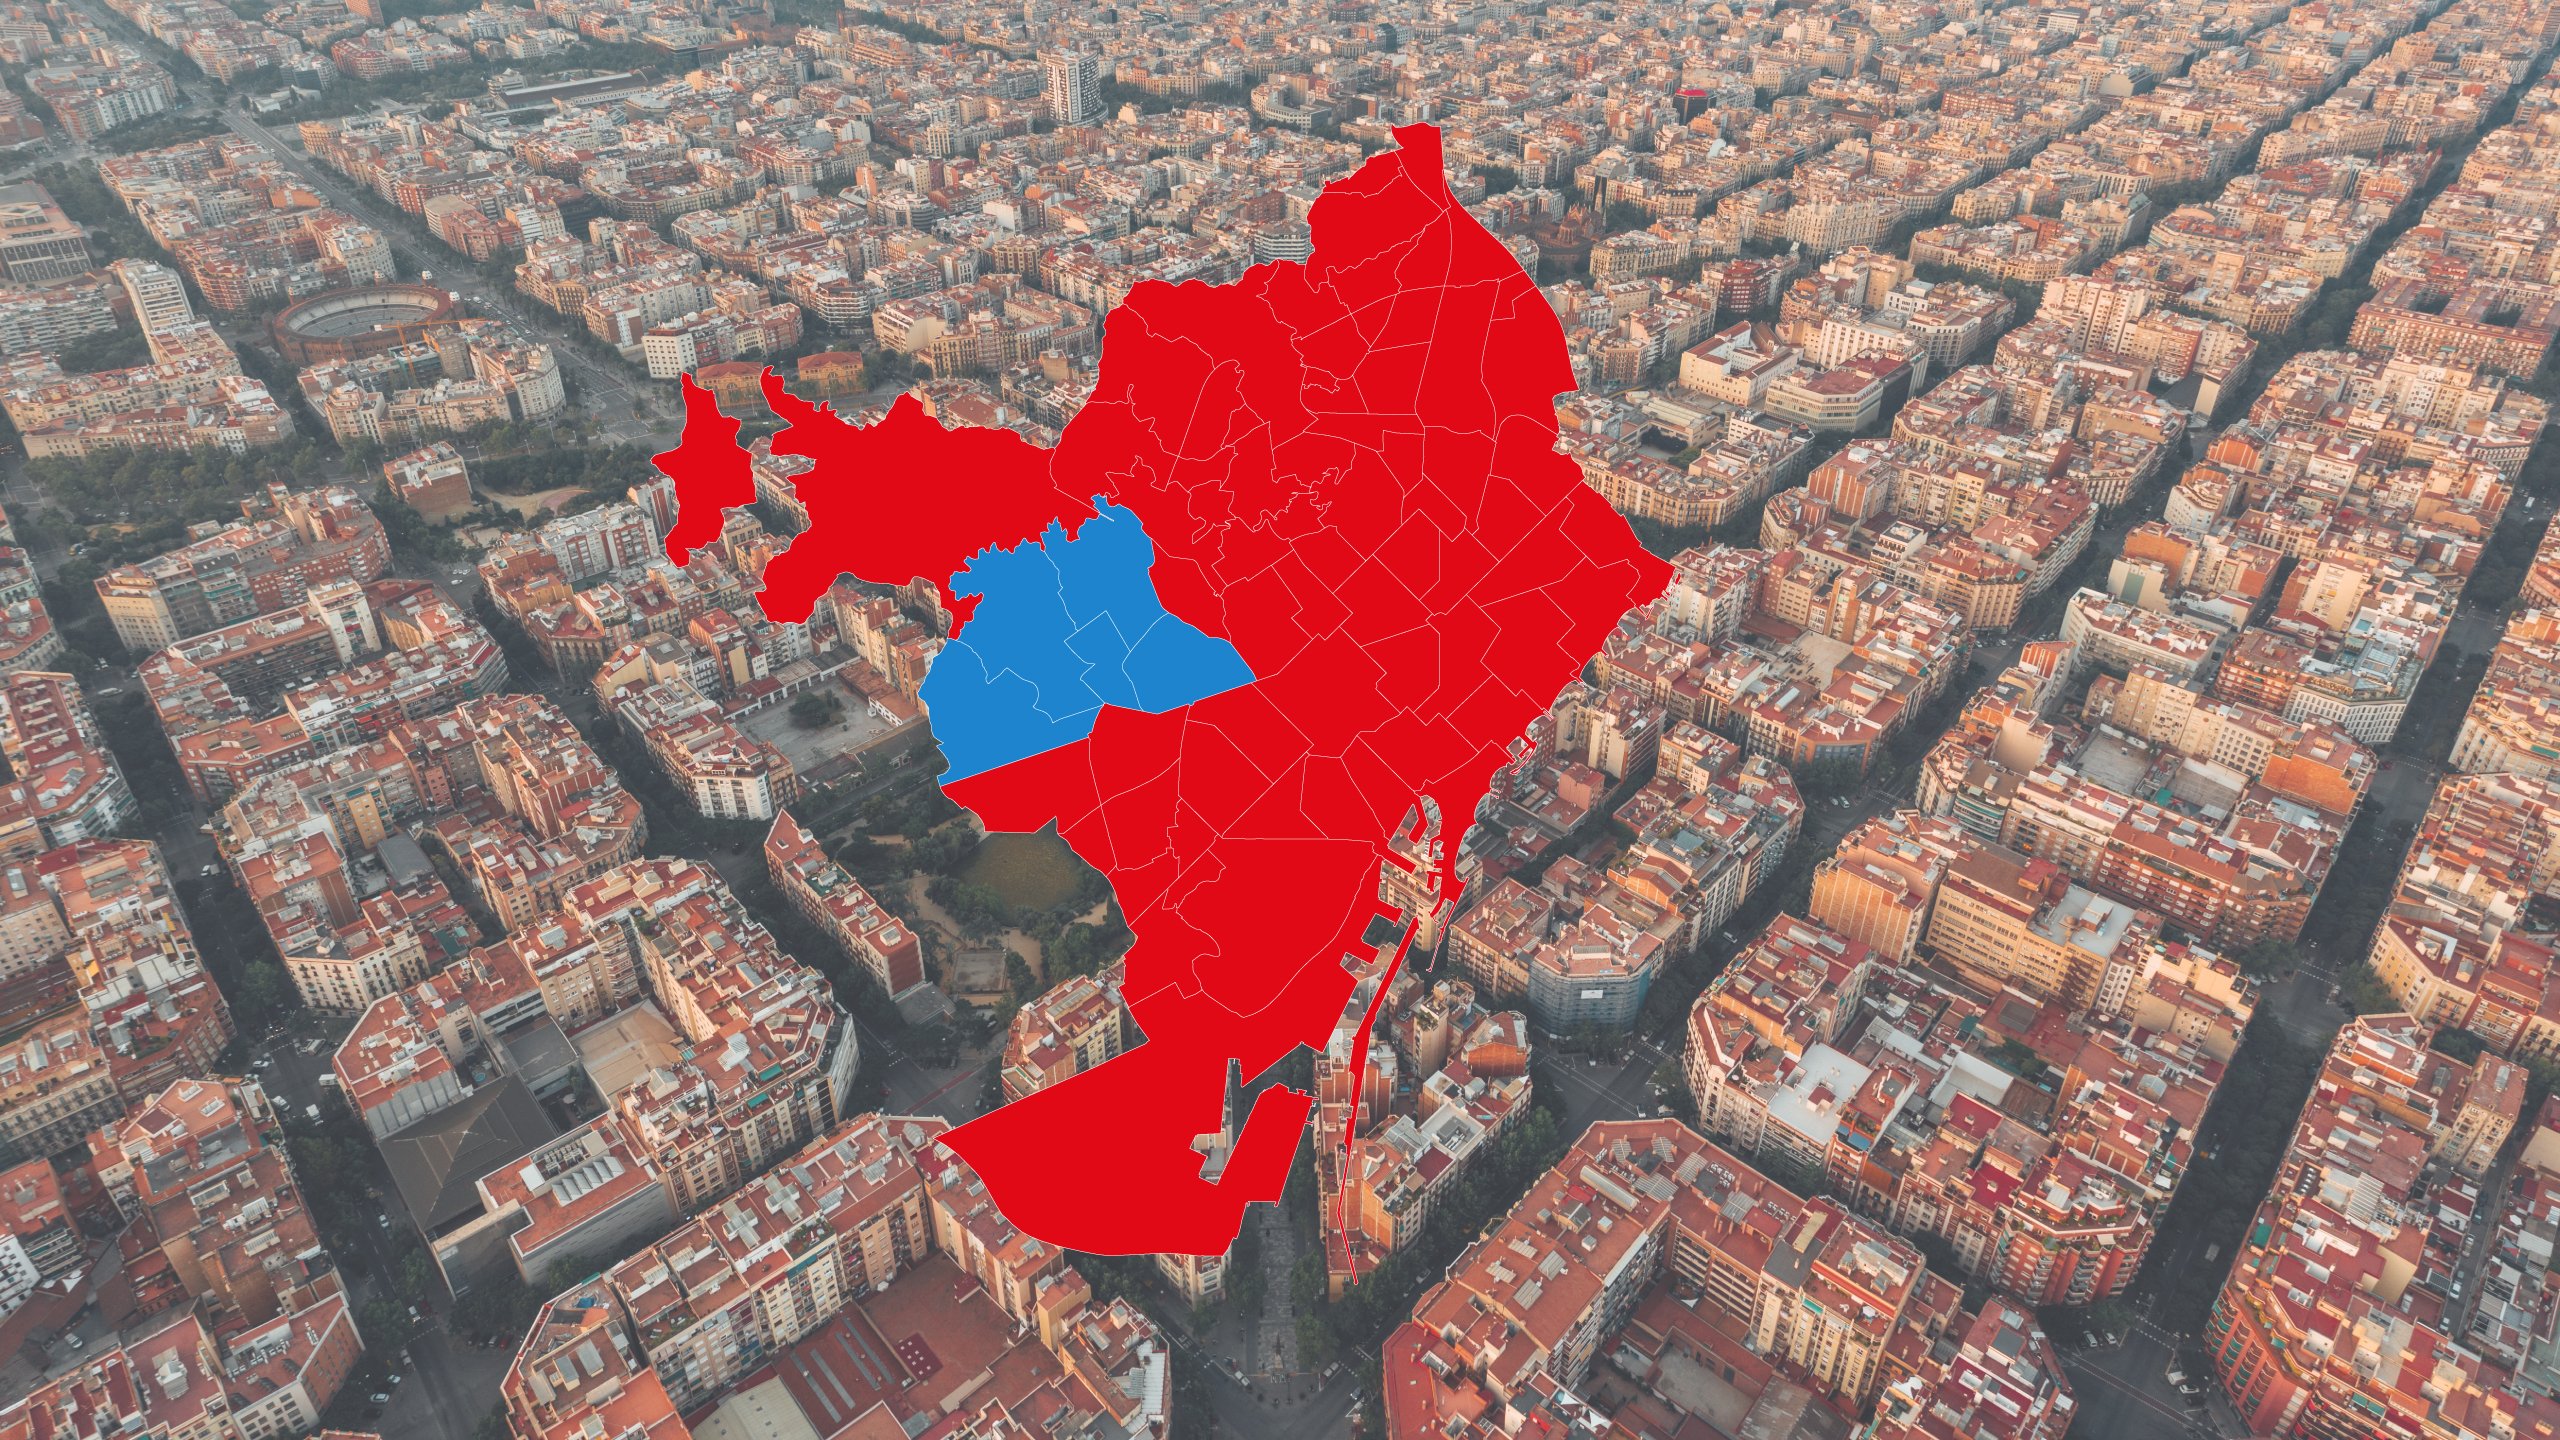 Generales vs. municipales: ¿cómo cambia el partido más votado en los barrios de Barcelona? | MAPA